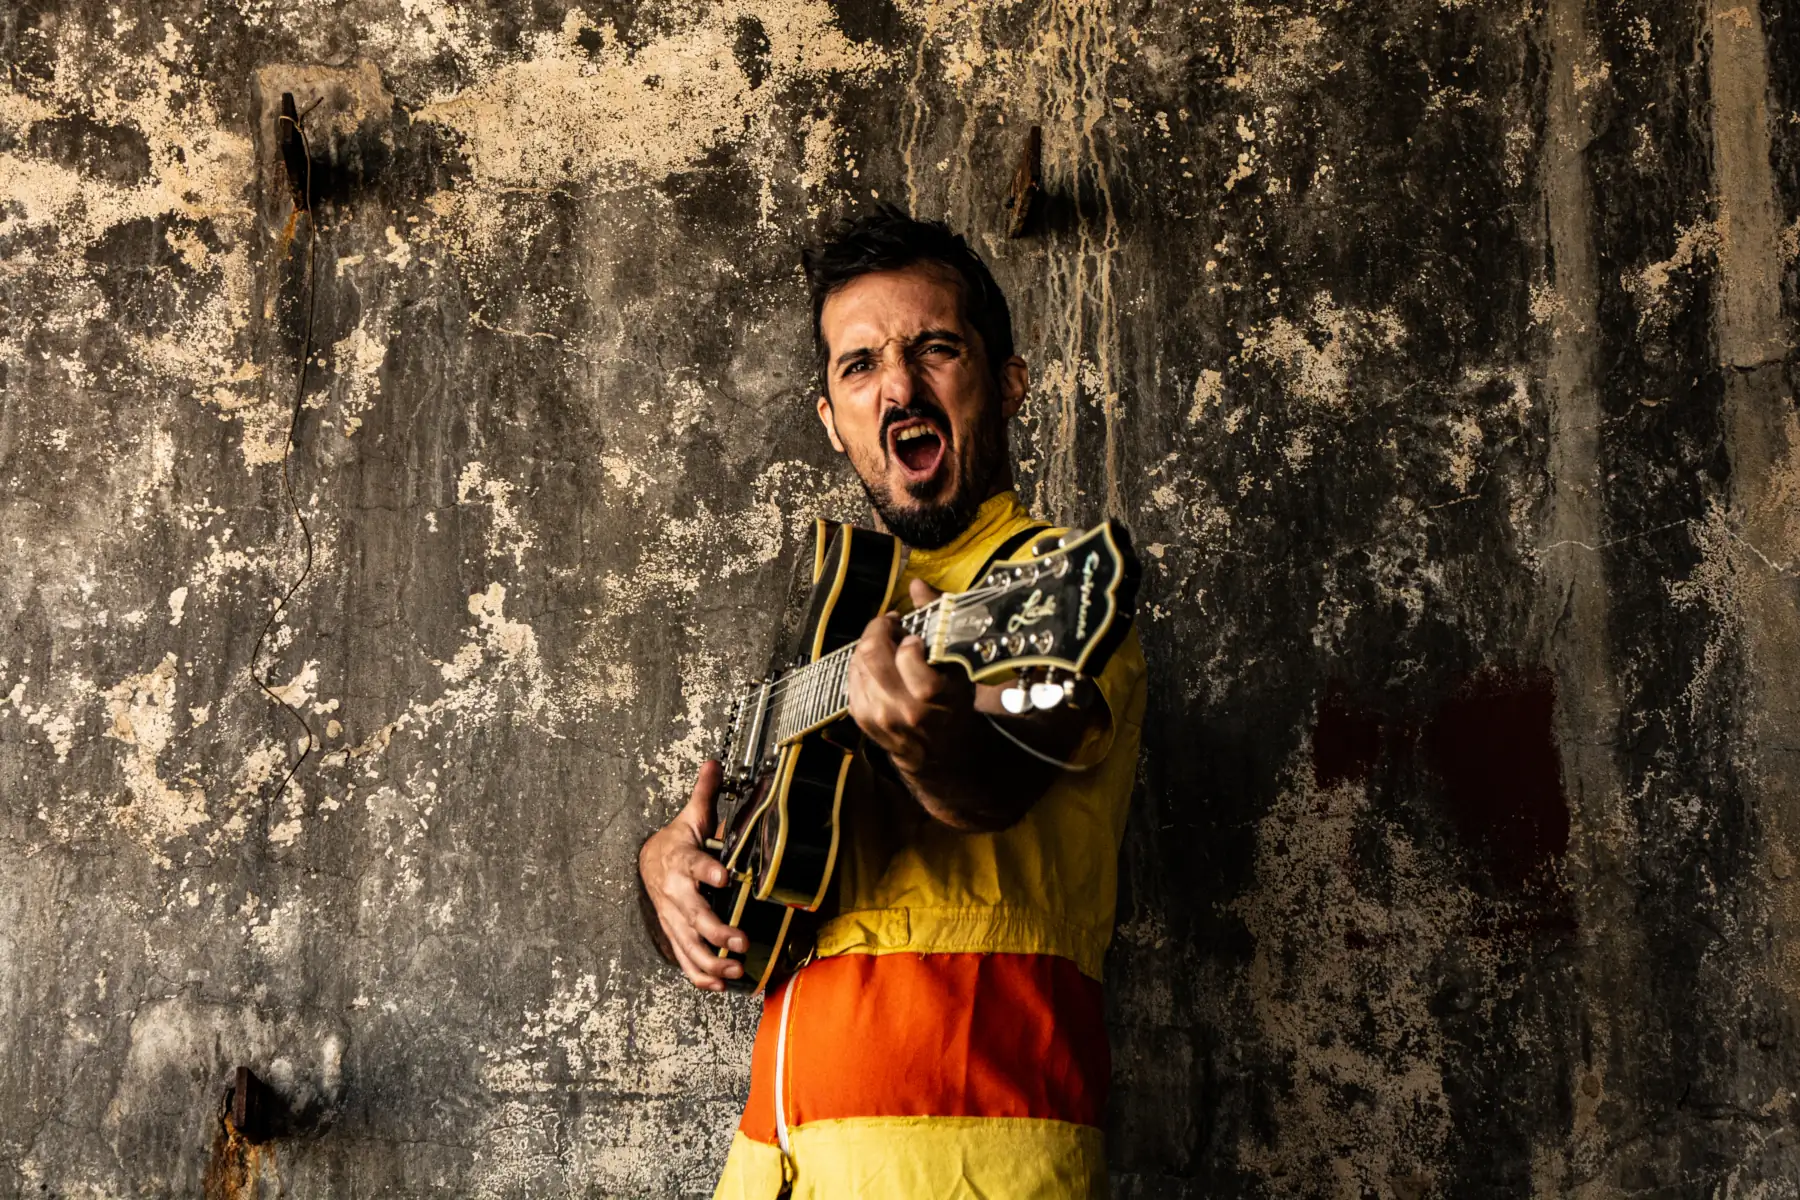 Tomás Rodriguez músico de la bomba de humo impro, con su guitarra en brazos